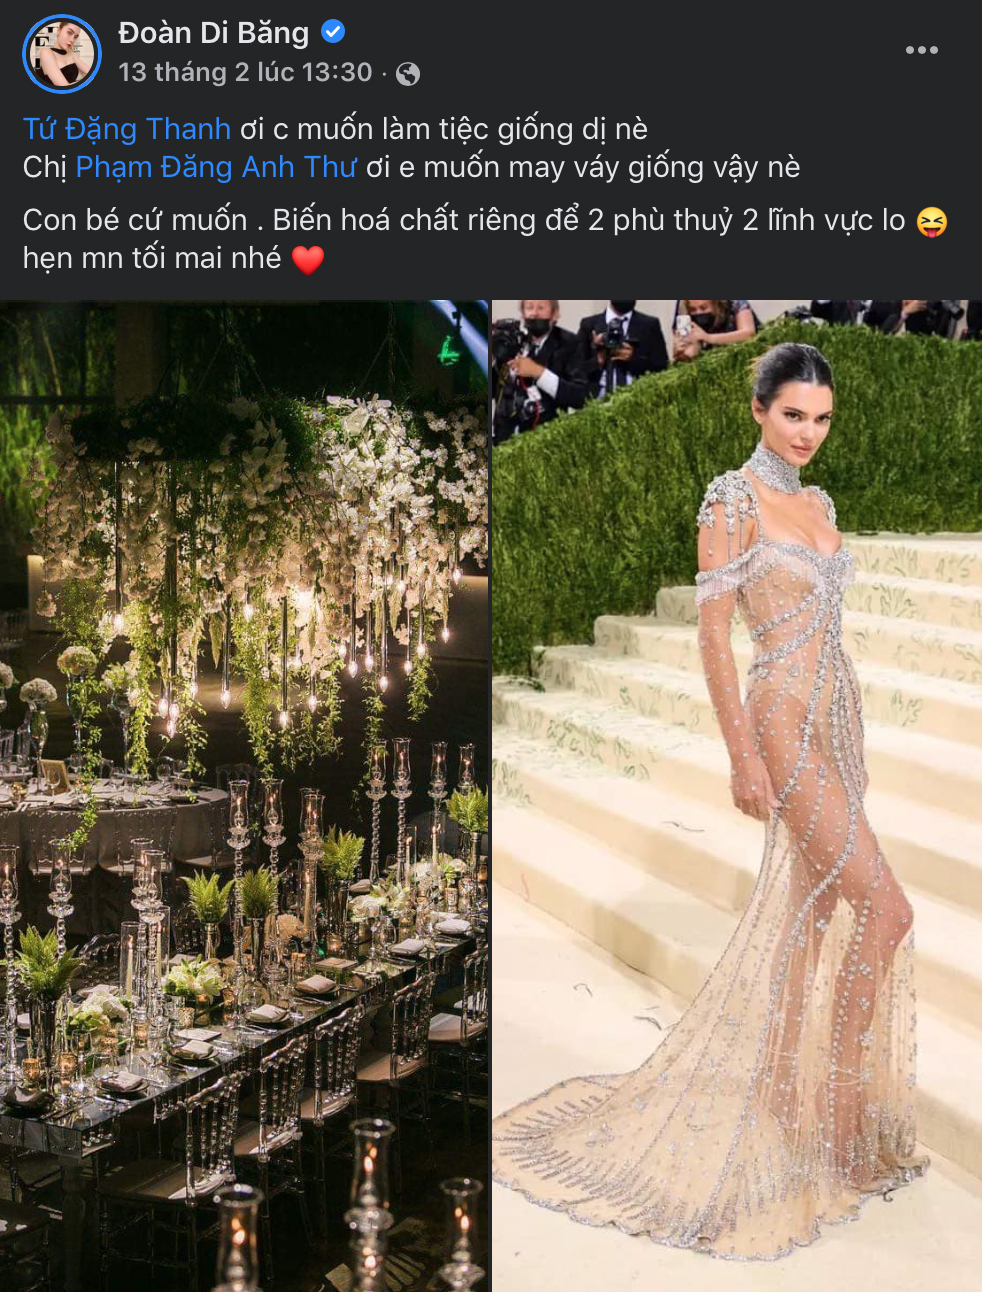 Xôn xao chiếc váy giá 9 chữ số của Đoàn Di Băng “nhái” theo Kendall Jenner, chính chủ nói gì?